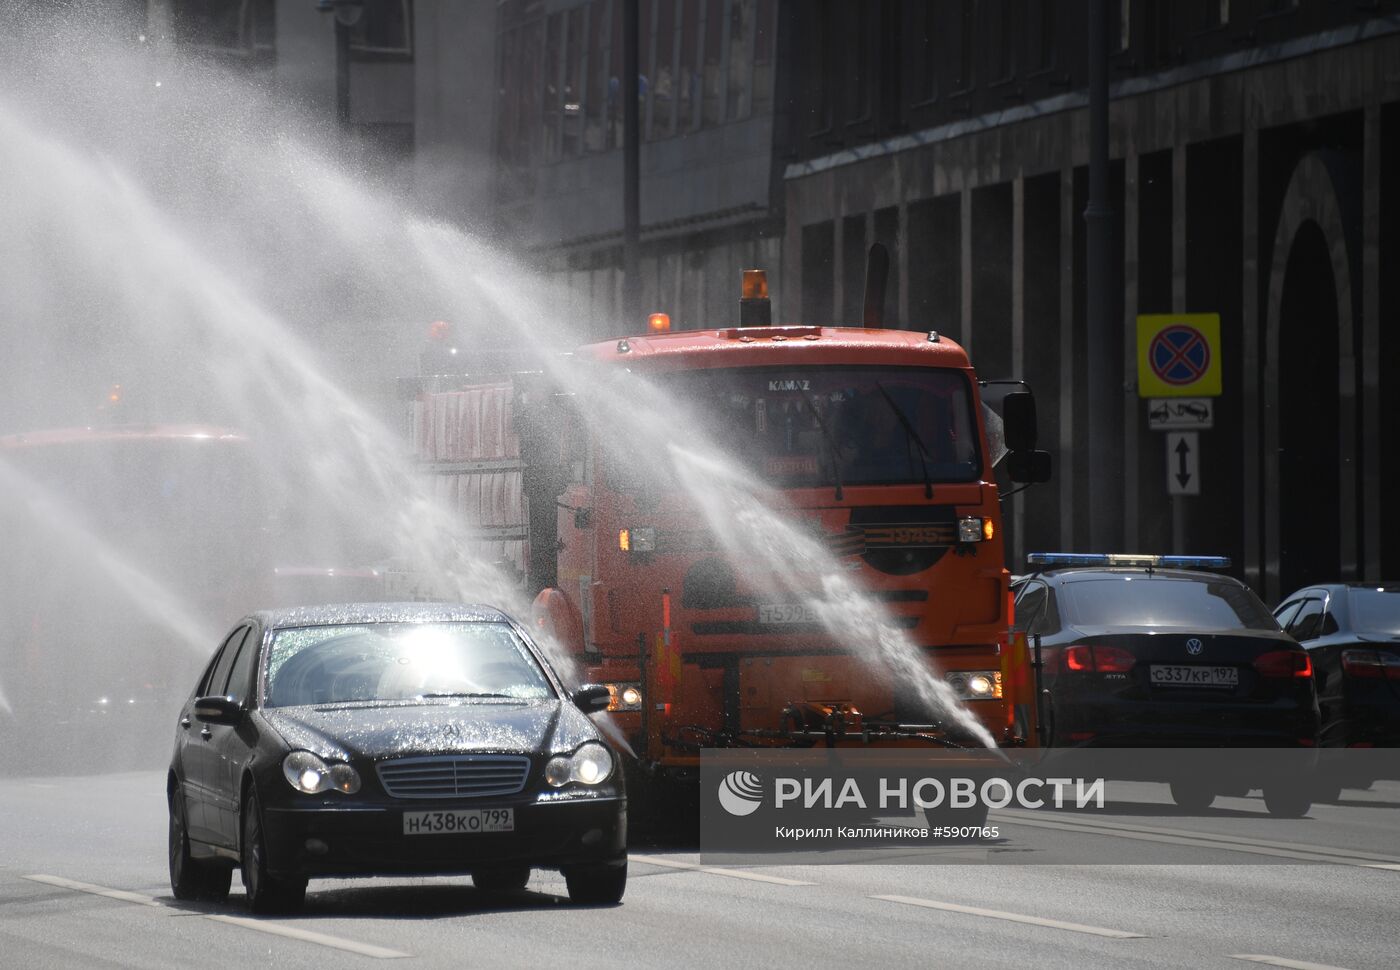 Аэрация воздуха и охлаждение дорожного покрытия в связи с жаркой погодой в Москве